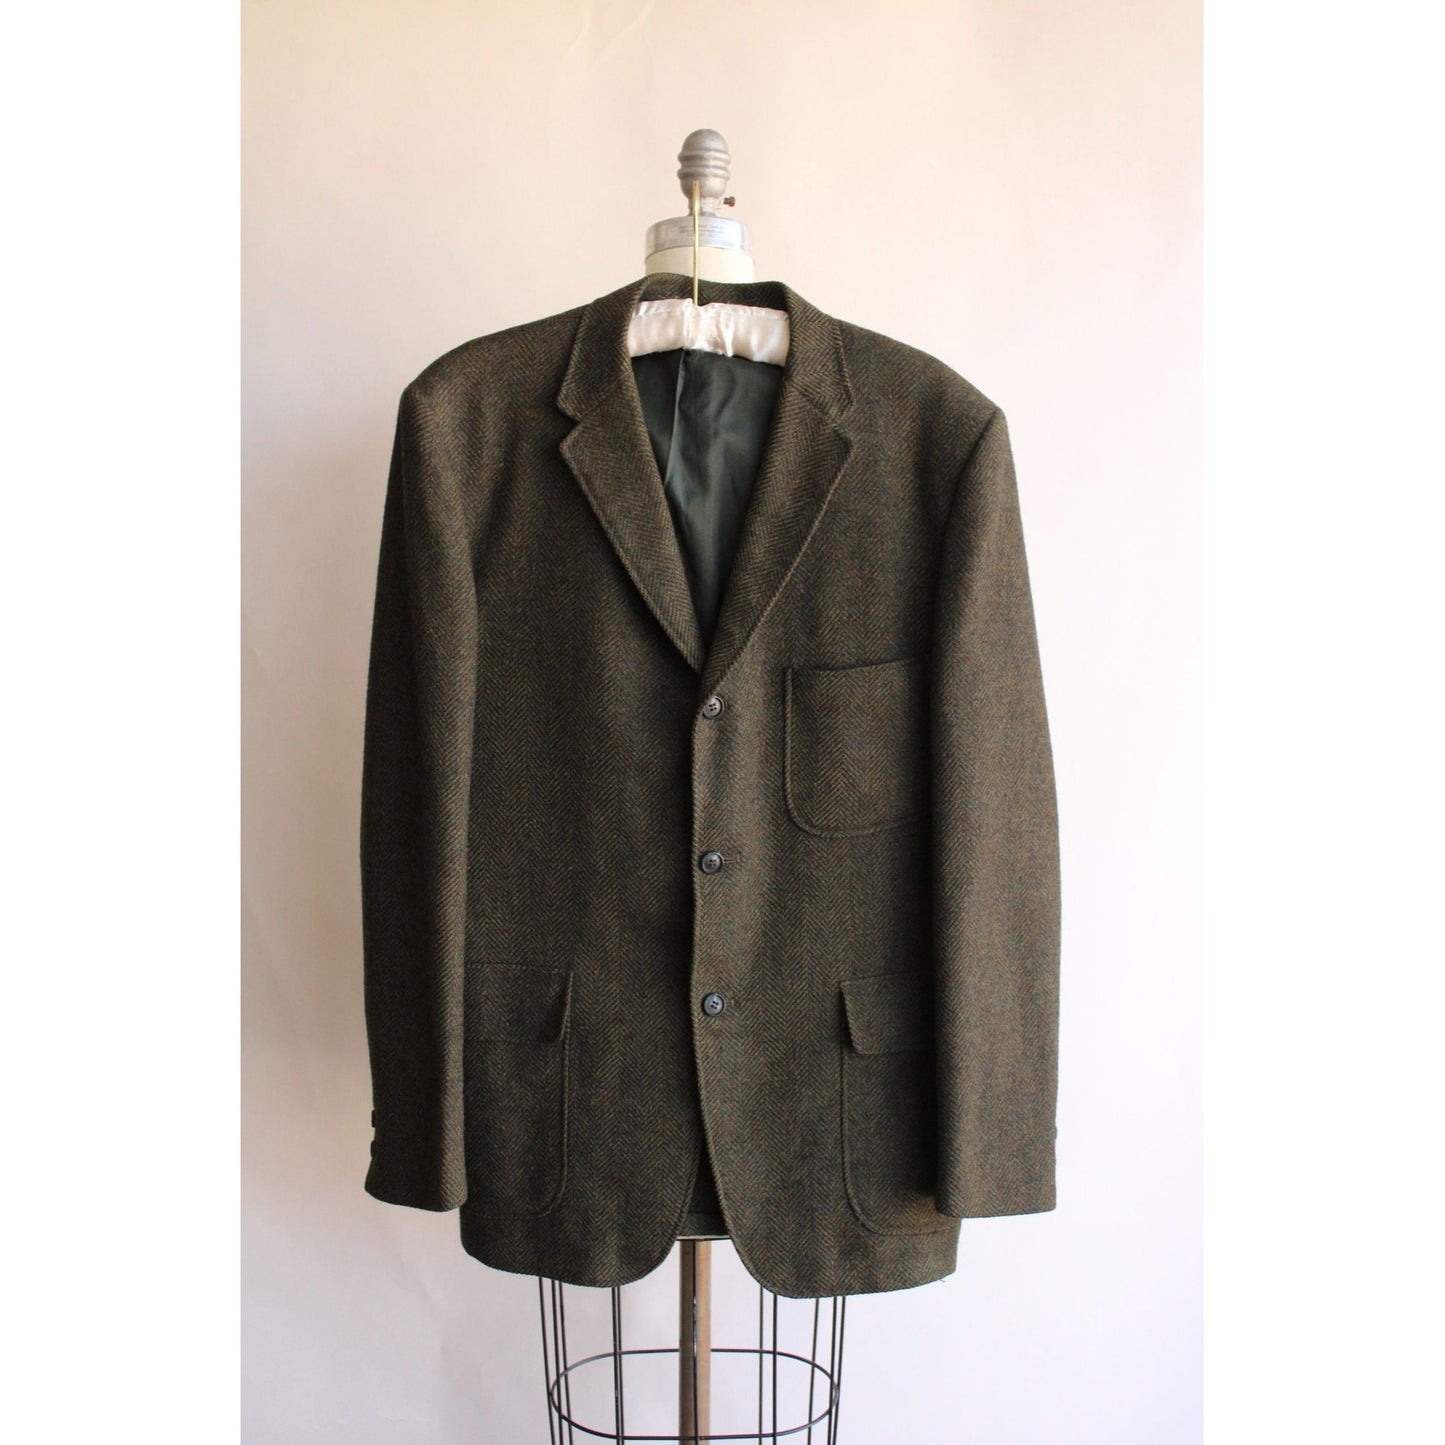 Vintage 1960s 1970s Green Wool Tweed Jacket